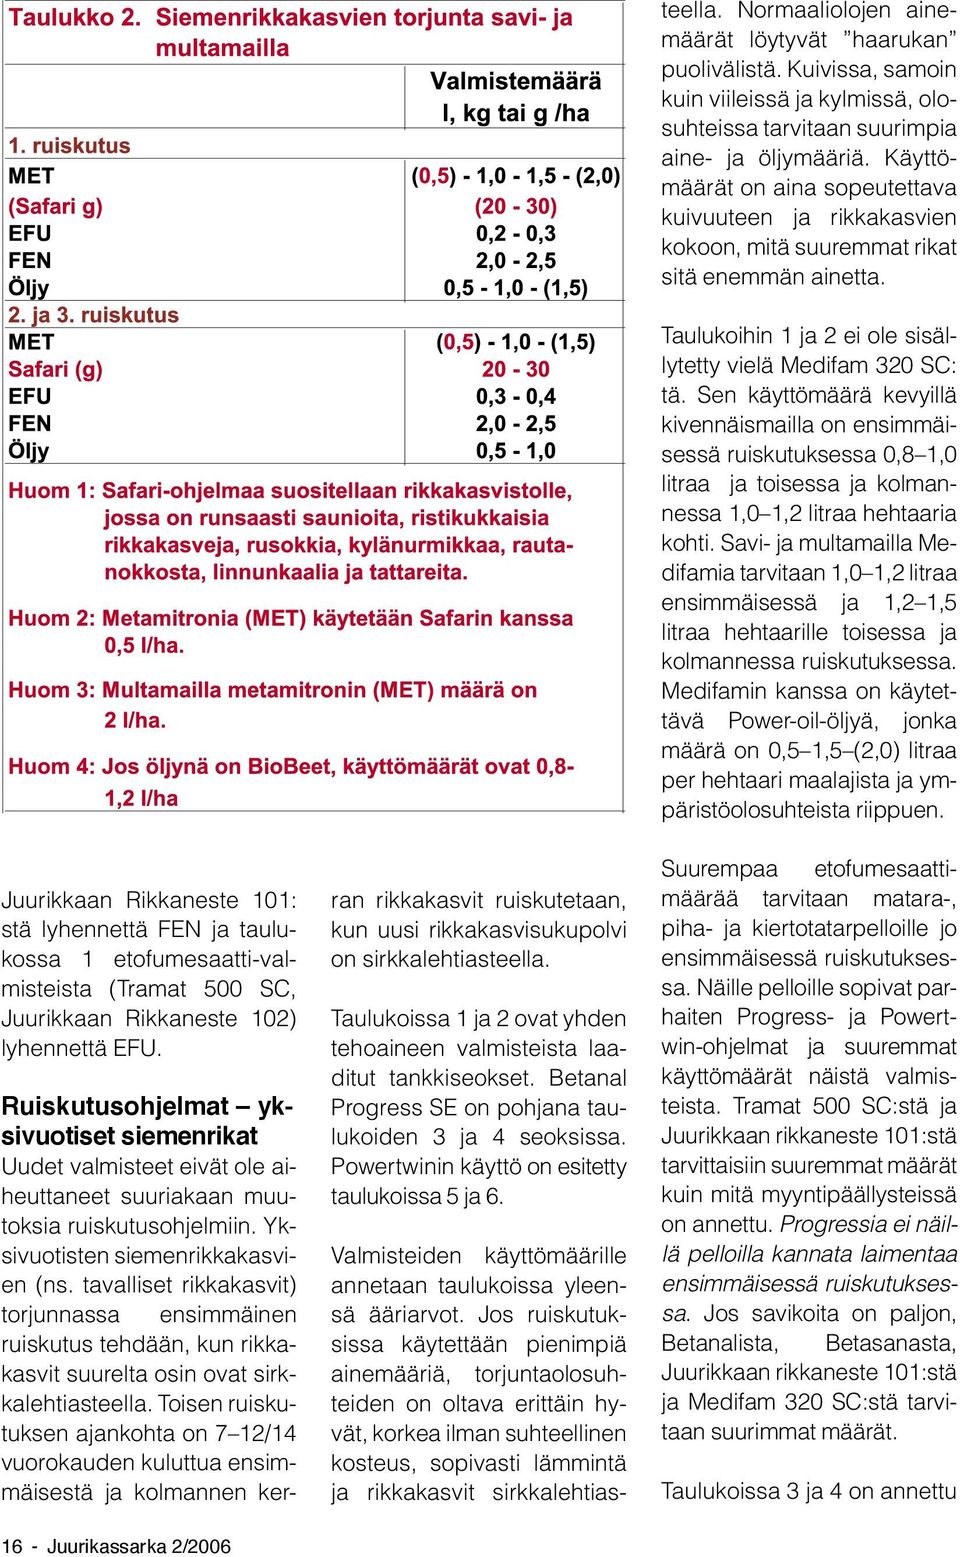 Juurikkaan Rikkaneste 101: stä lyhennettä FEN ja taulukossa 1 etofumesaatti-valmisteista (Tramat 500 SC, Juurikkaan Rikkaneste 102) lyhennettä EFU.